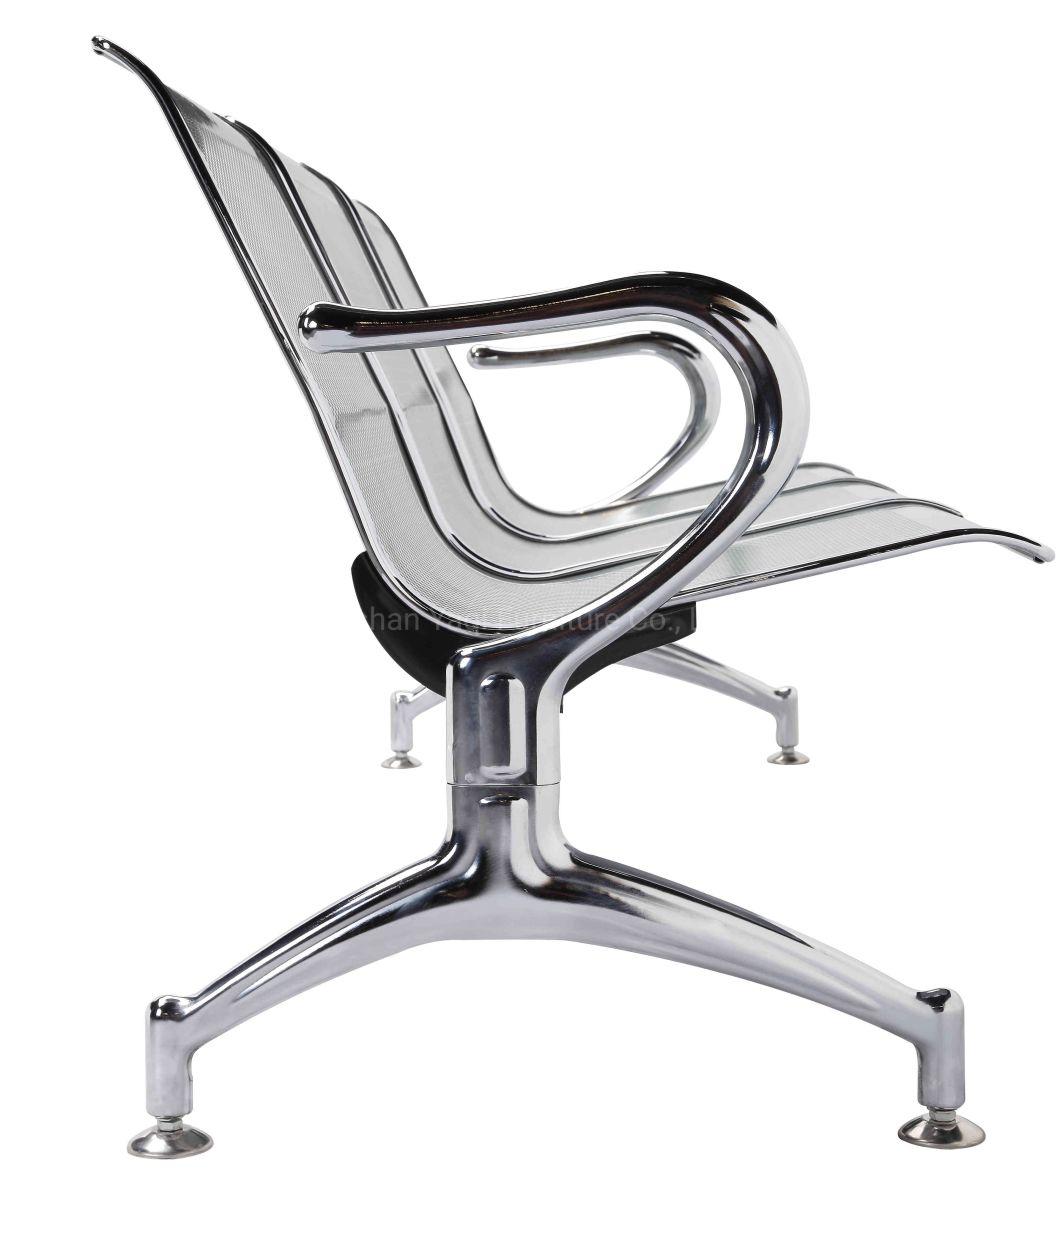 Airport Chair/Waiting Chair/Hospital Chair/Public Chair (YA-19)